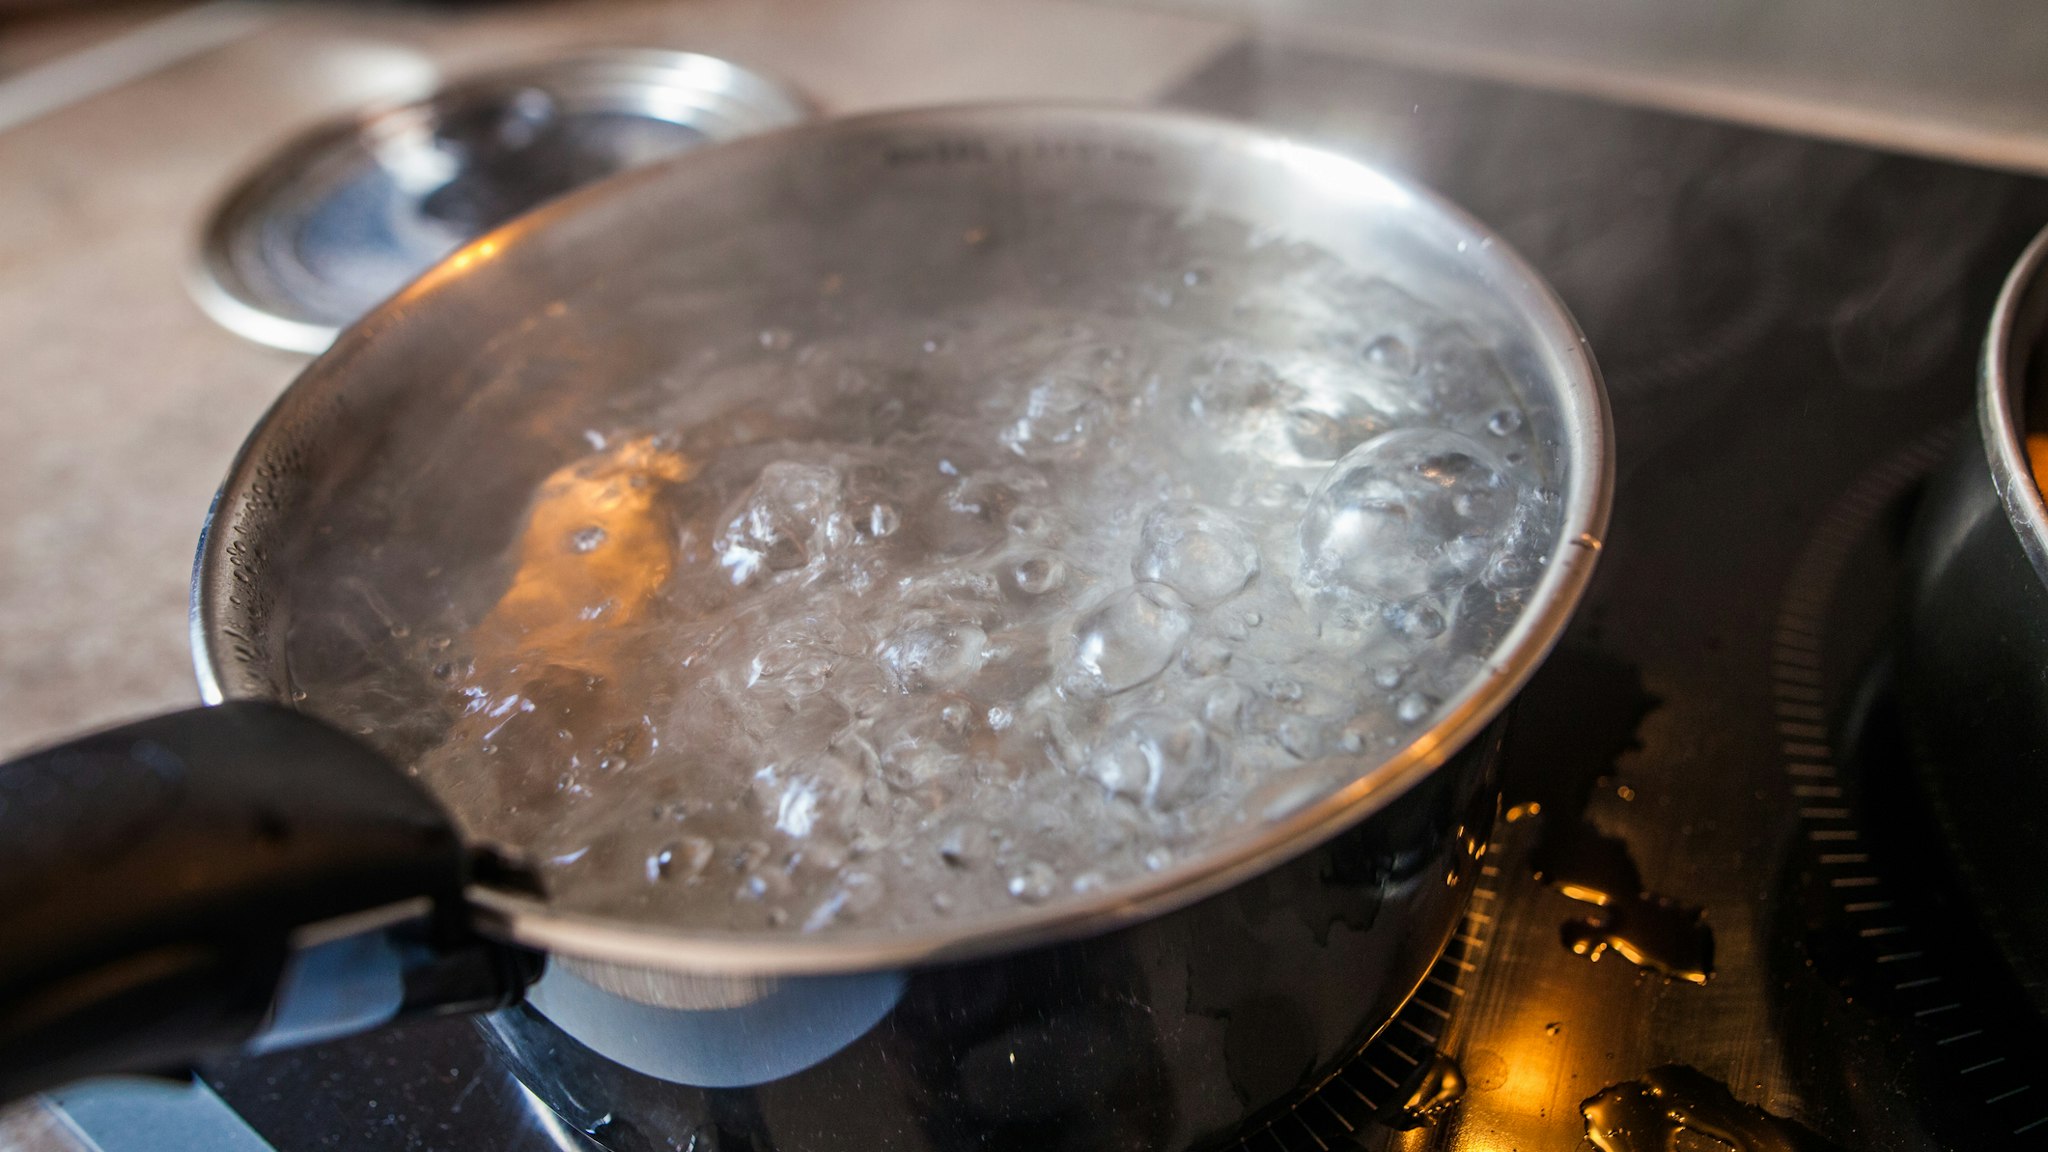 Cuisine - Casserole d'eau bouillante - stock photo